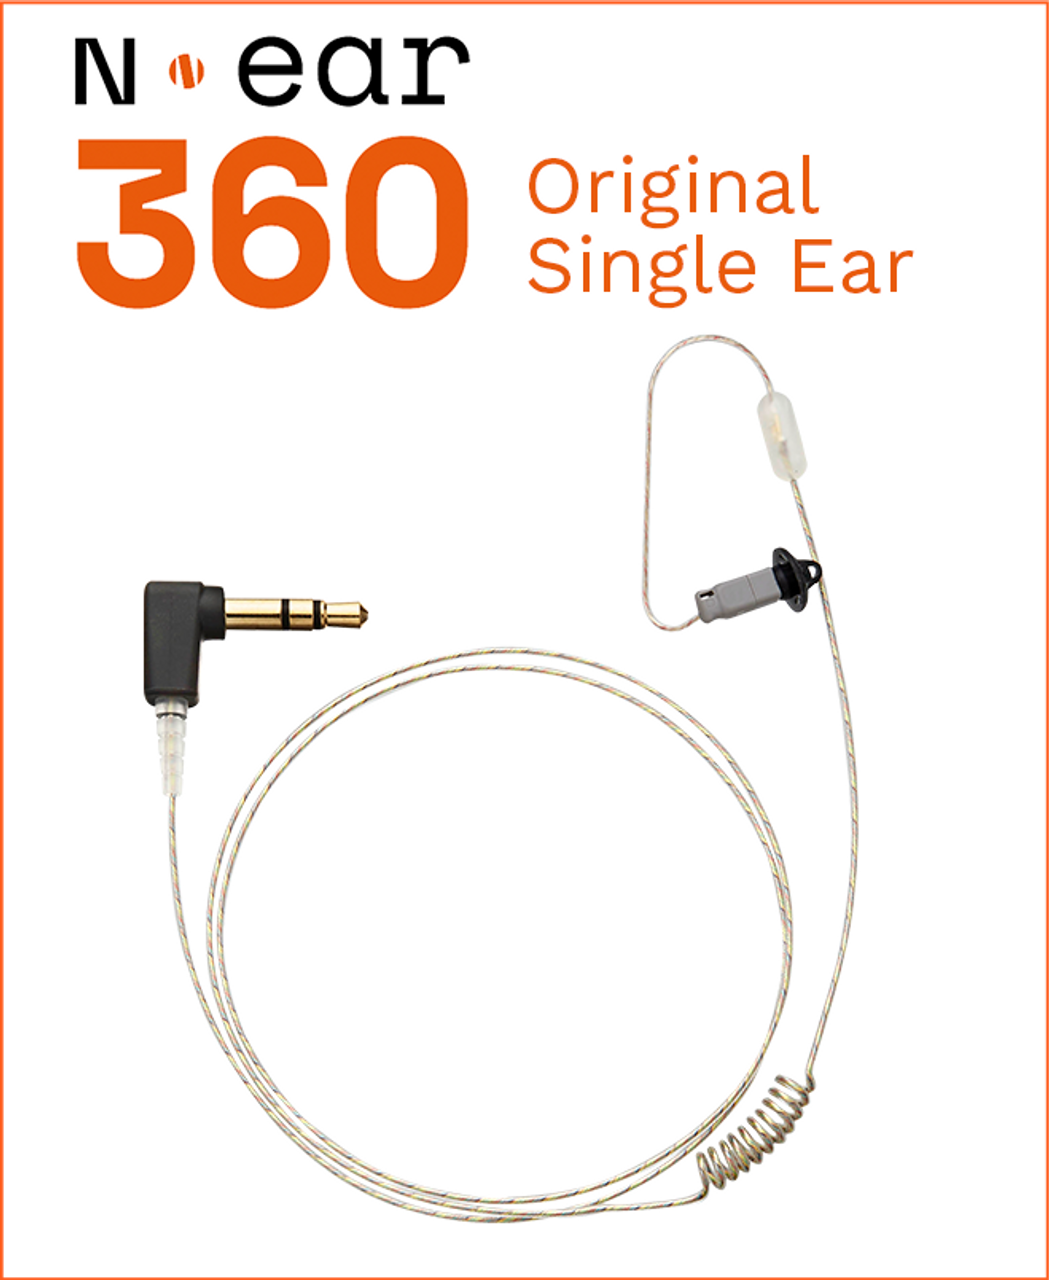 N•ear 360™ Original Single Ear Earpiece